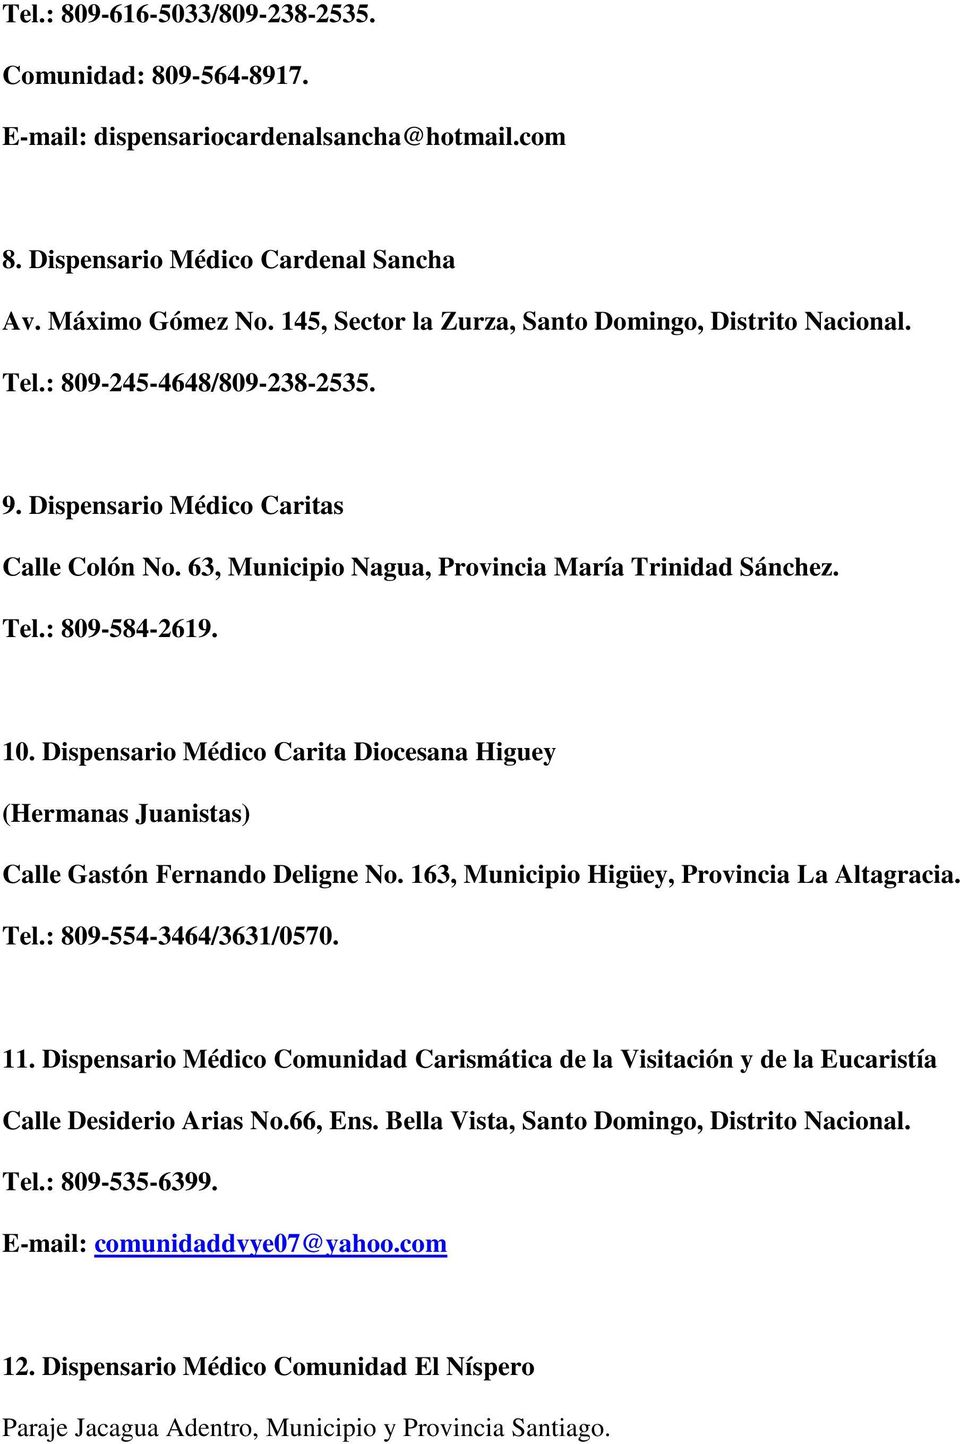 10. Dispensario Médico Carita Diocesana Higuey (Hermanas Juanistas) Calle Gastón Fernando Deligne No. 163, Municipio Higüey, Provincia La Altagracia. Tel.: 809-554-3464/3631/0570. 11.